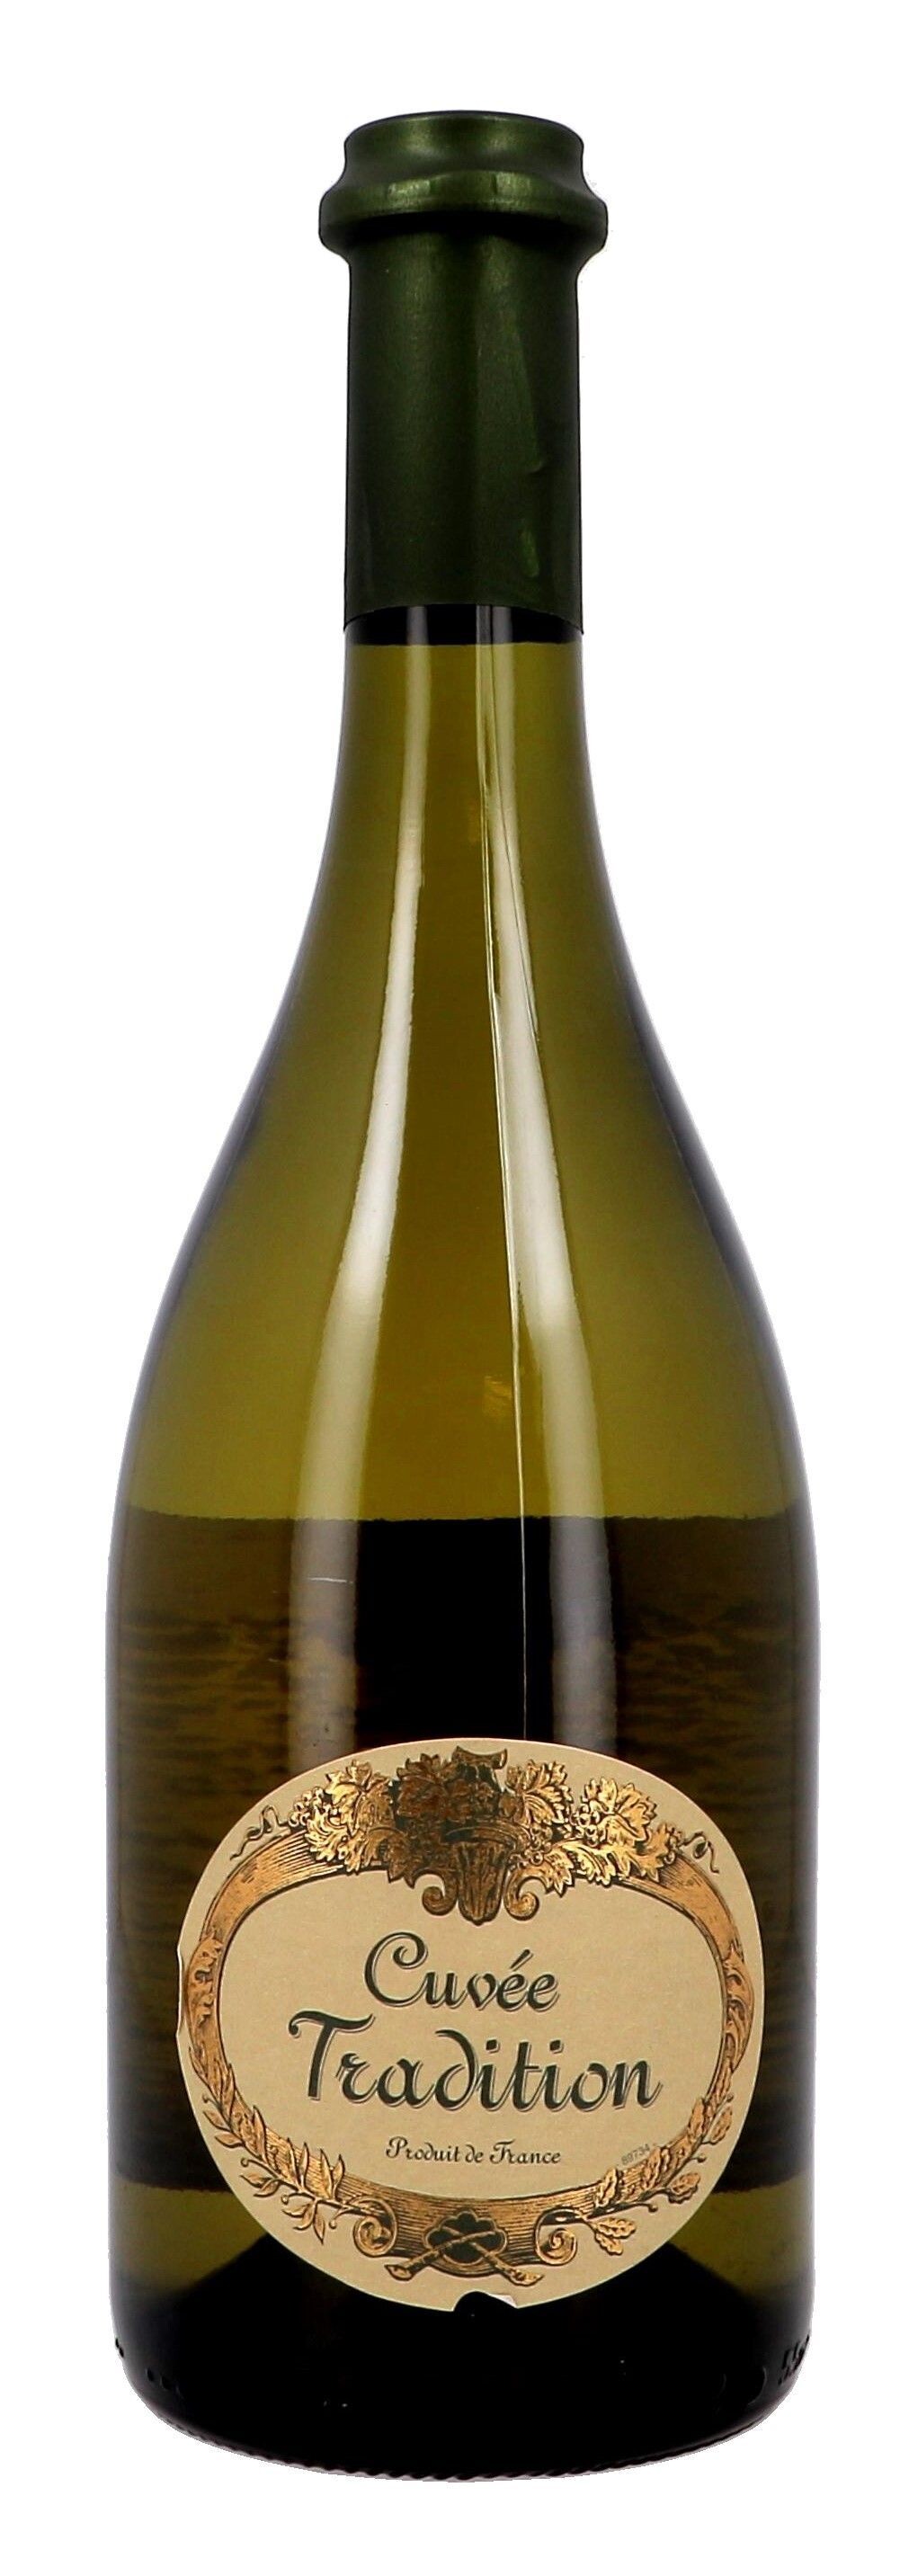 Cuvée Tradition Boisset white 75cl Vin de Pays de l'Herault (Wijnen)